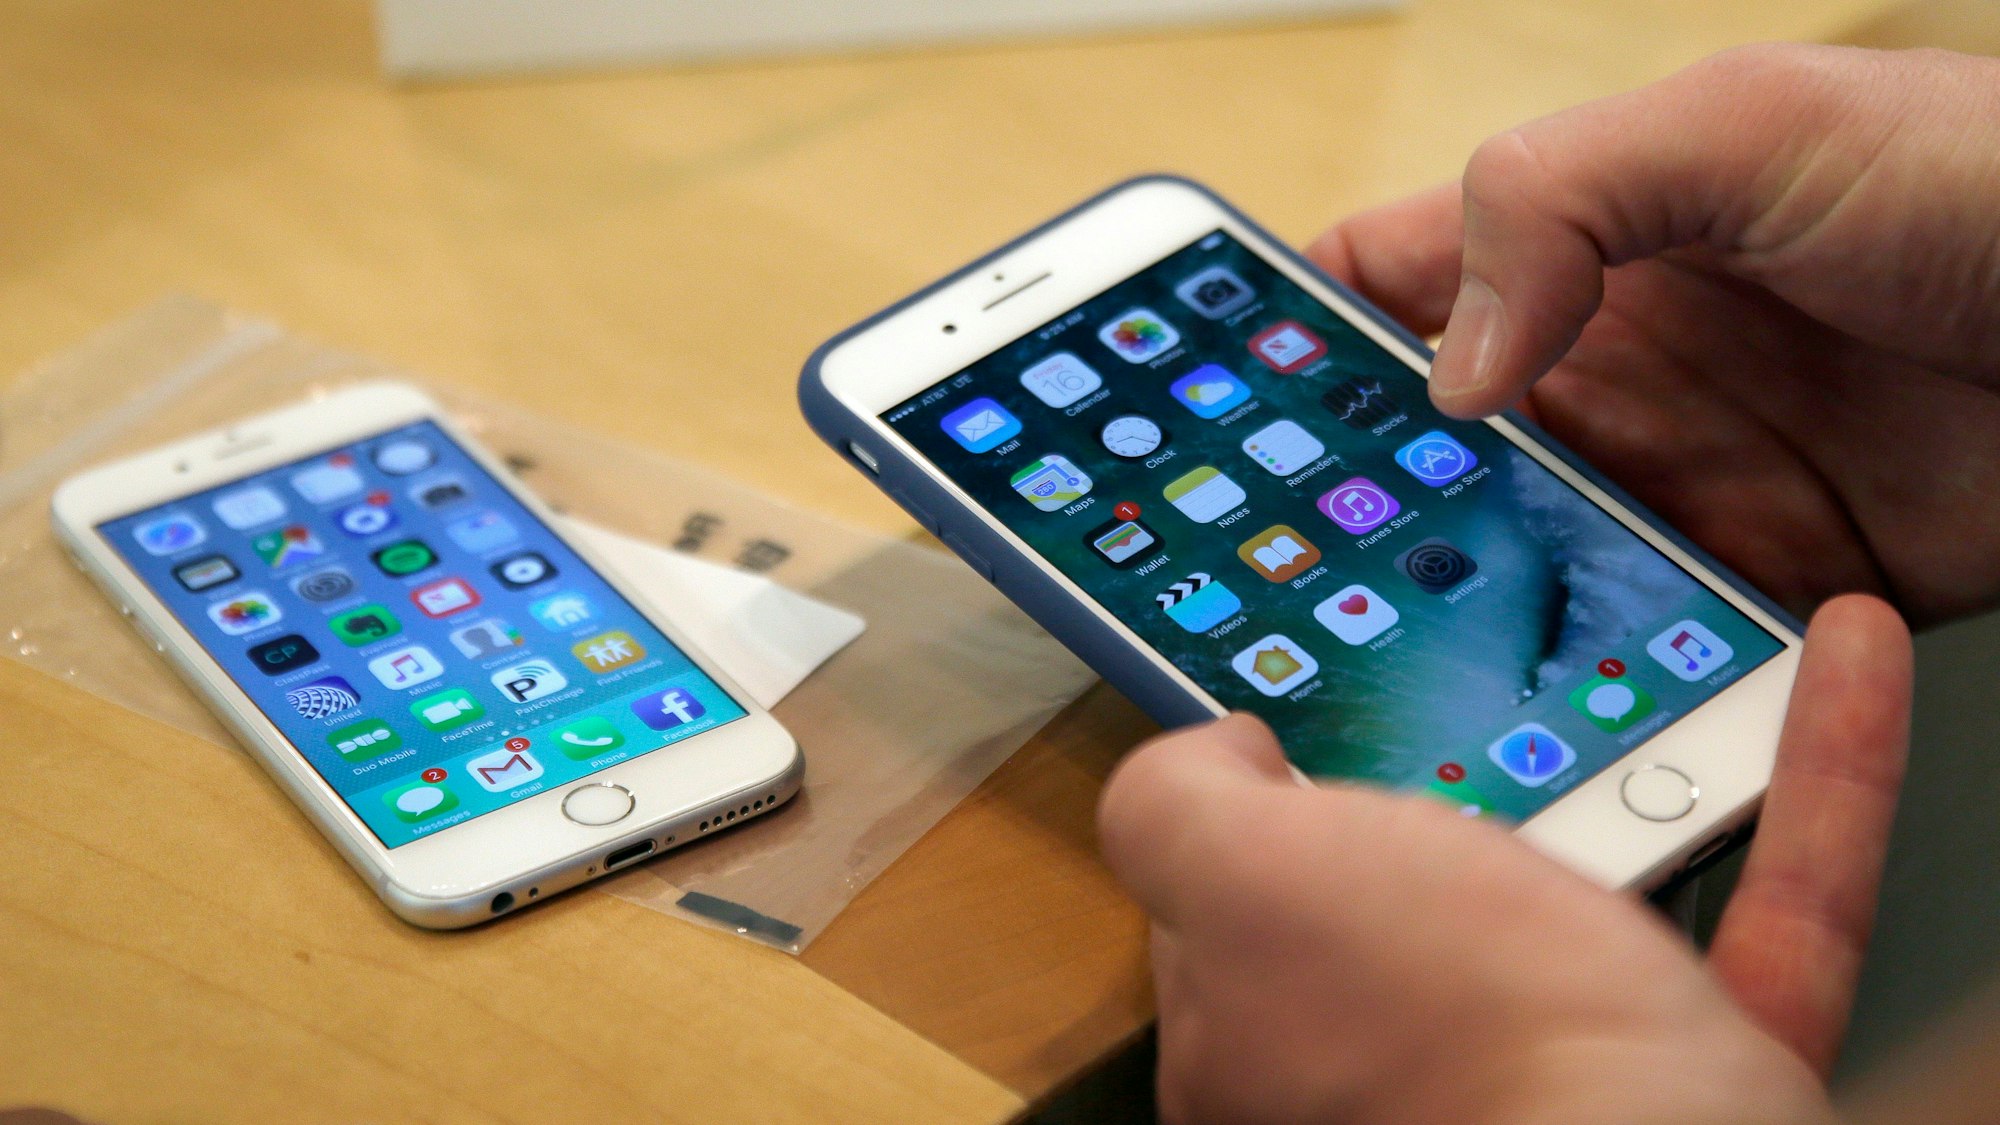 Ein Kunde richtet sein neues iPhone 7 Plus (r) ein, während sein altes iPhone 6 auf einem Tisch liegt.